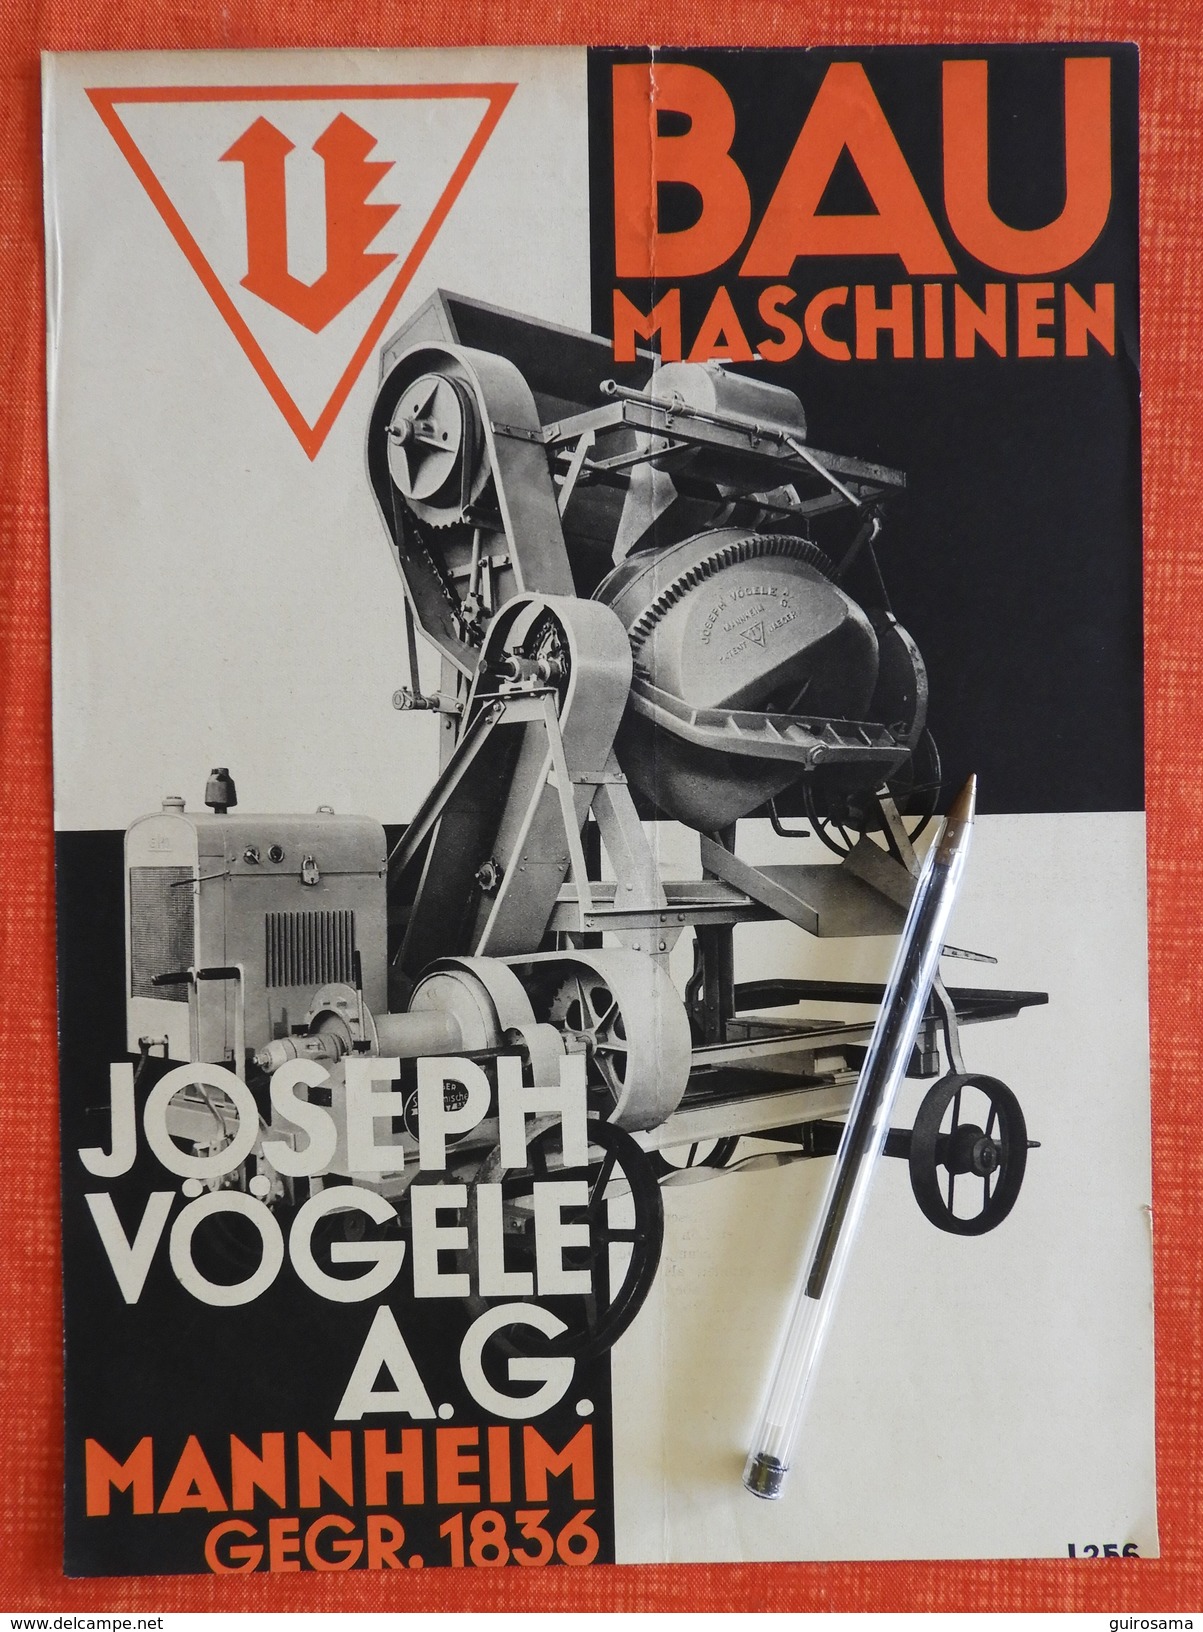 Lot de 7 documents publicitaires sur le béton - années 30 à 60 - Set mit 7 Werbeanzeigen auf Beton